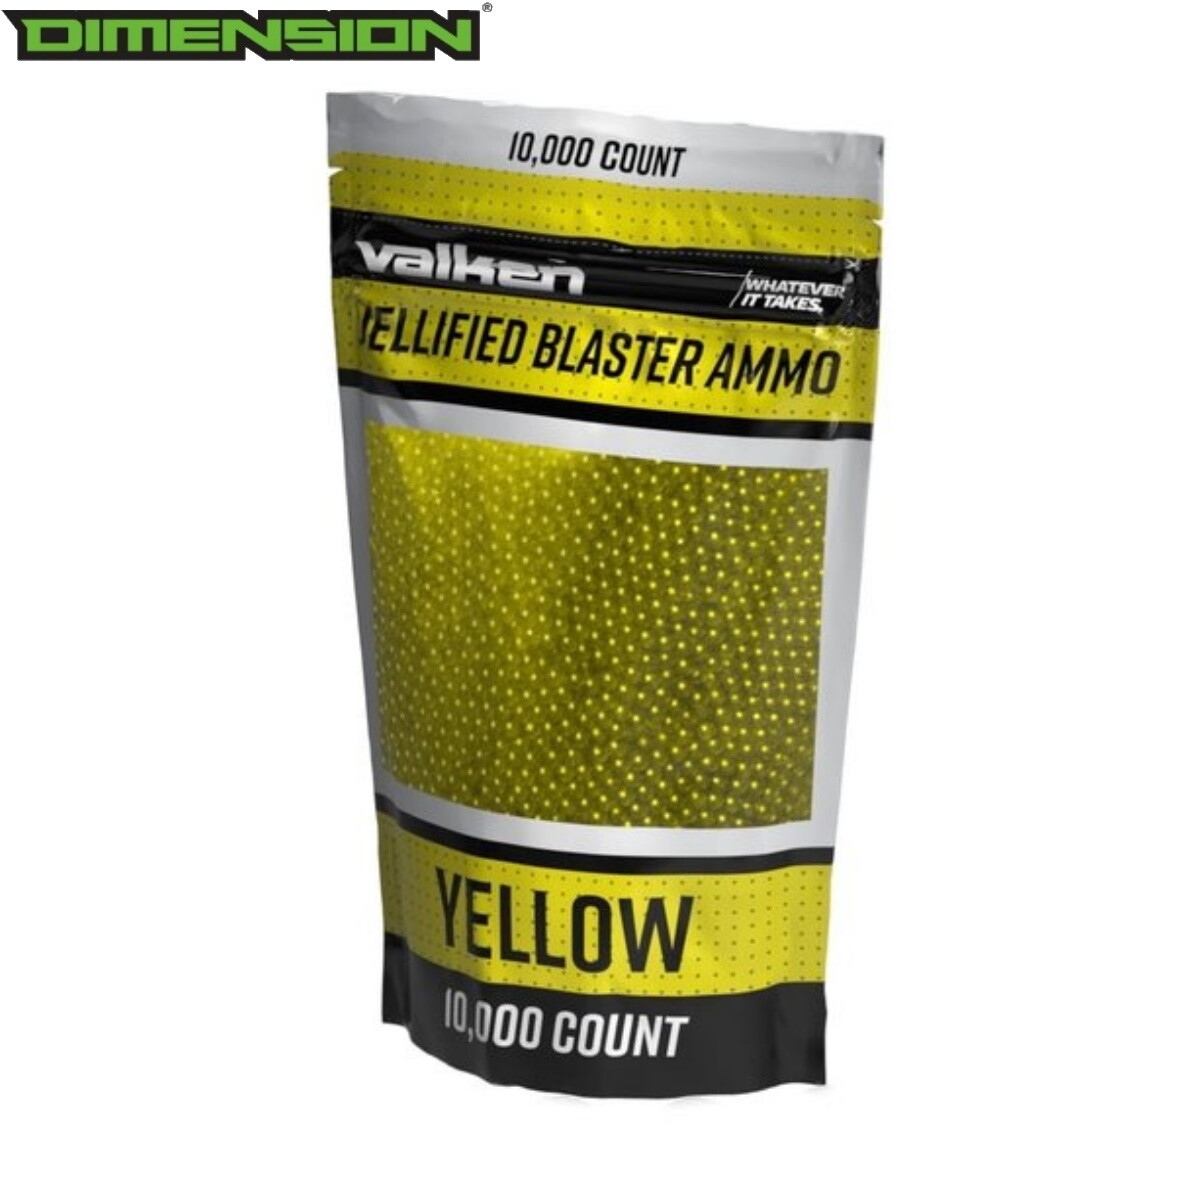 Valken Jellified Blaster Ammo -10,000rds - Yellow